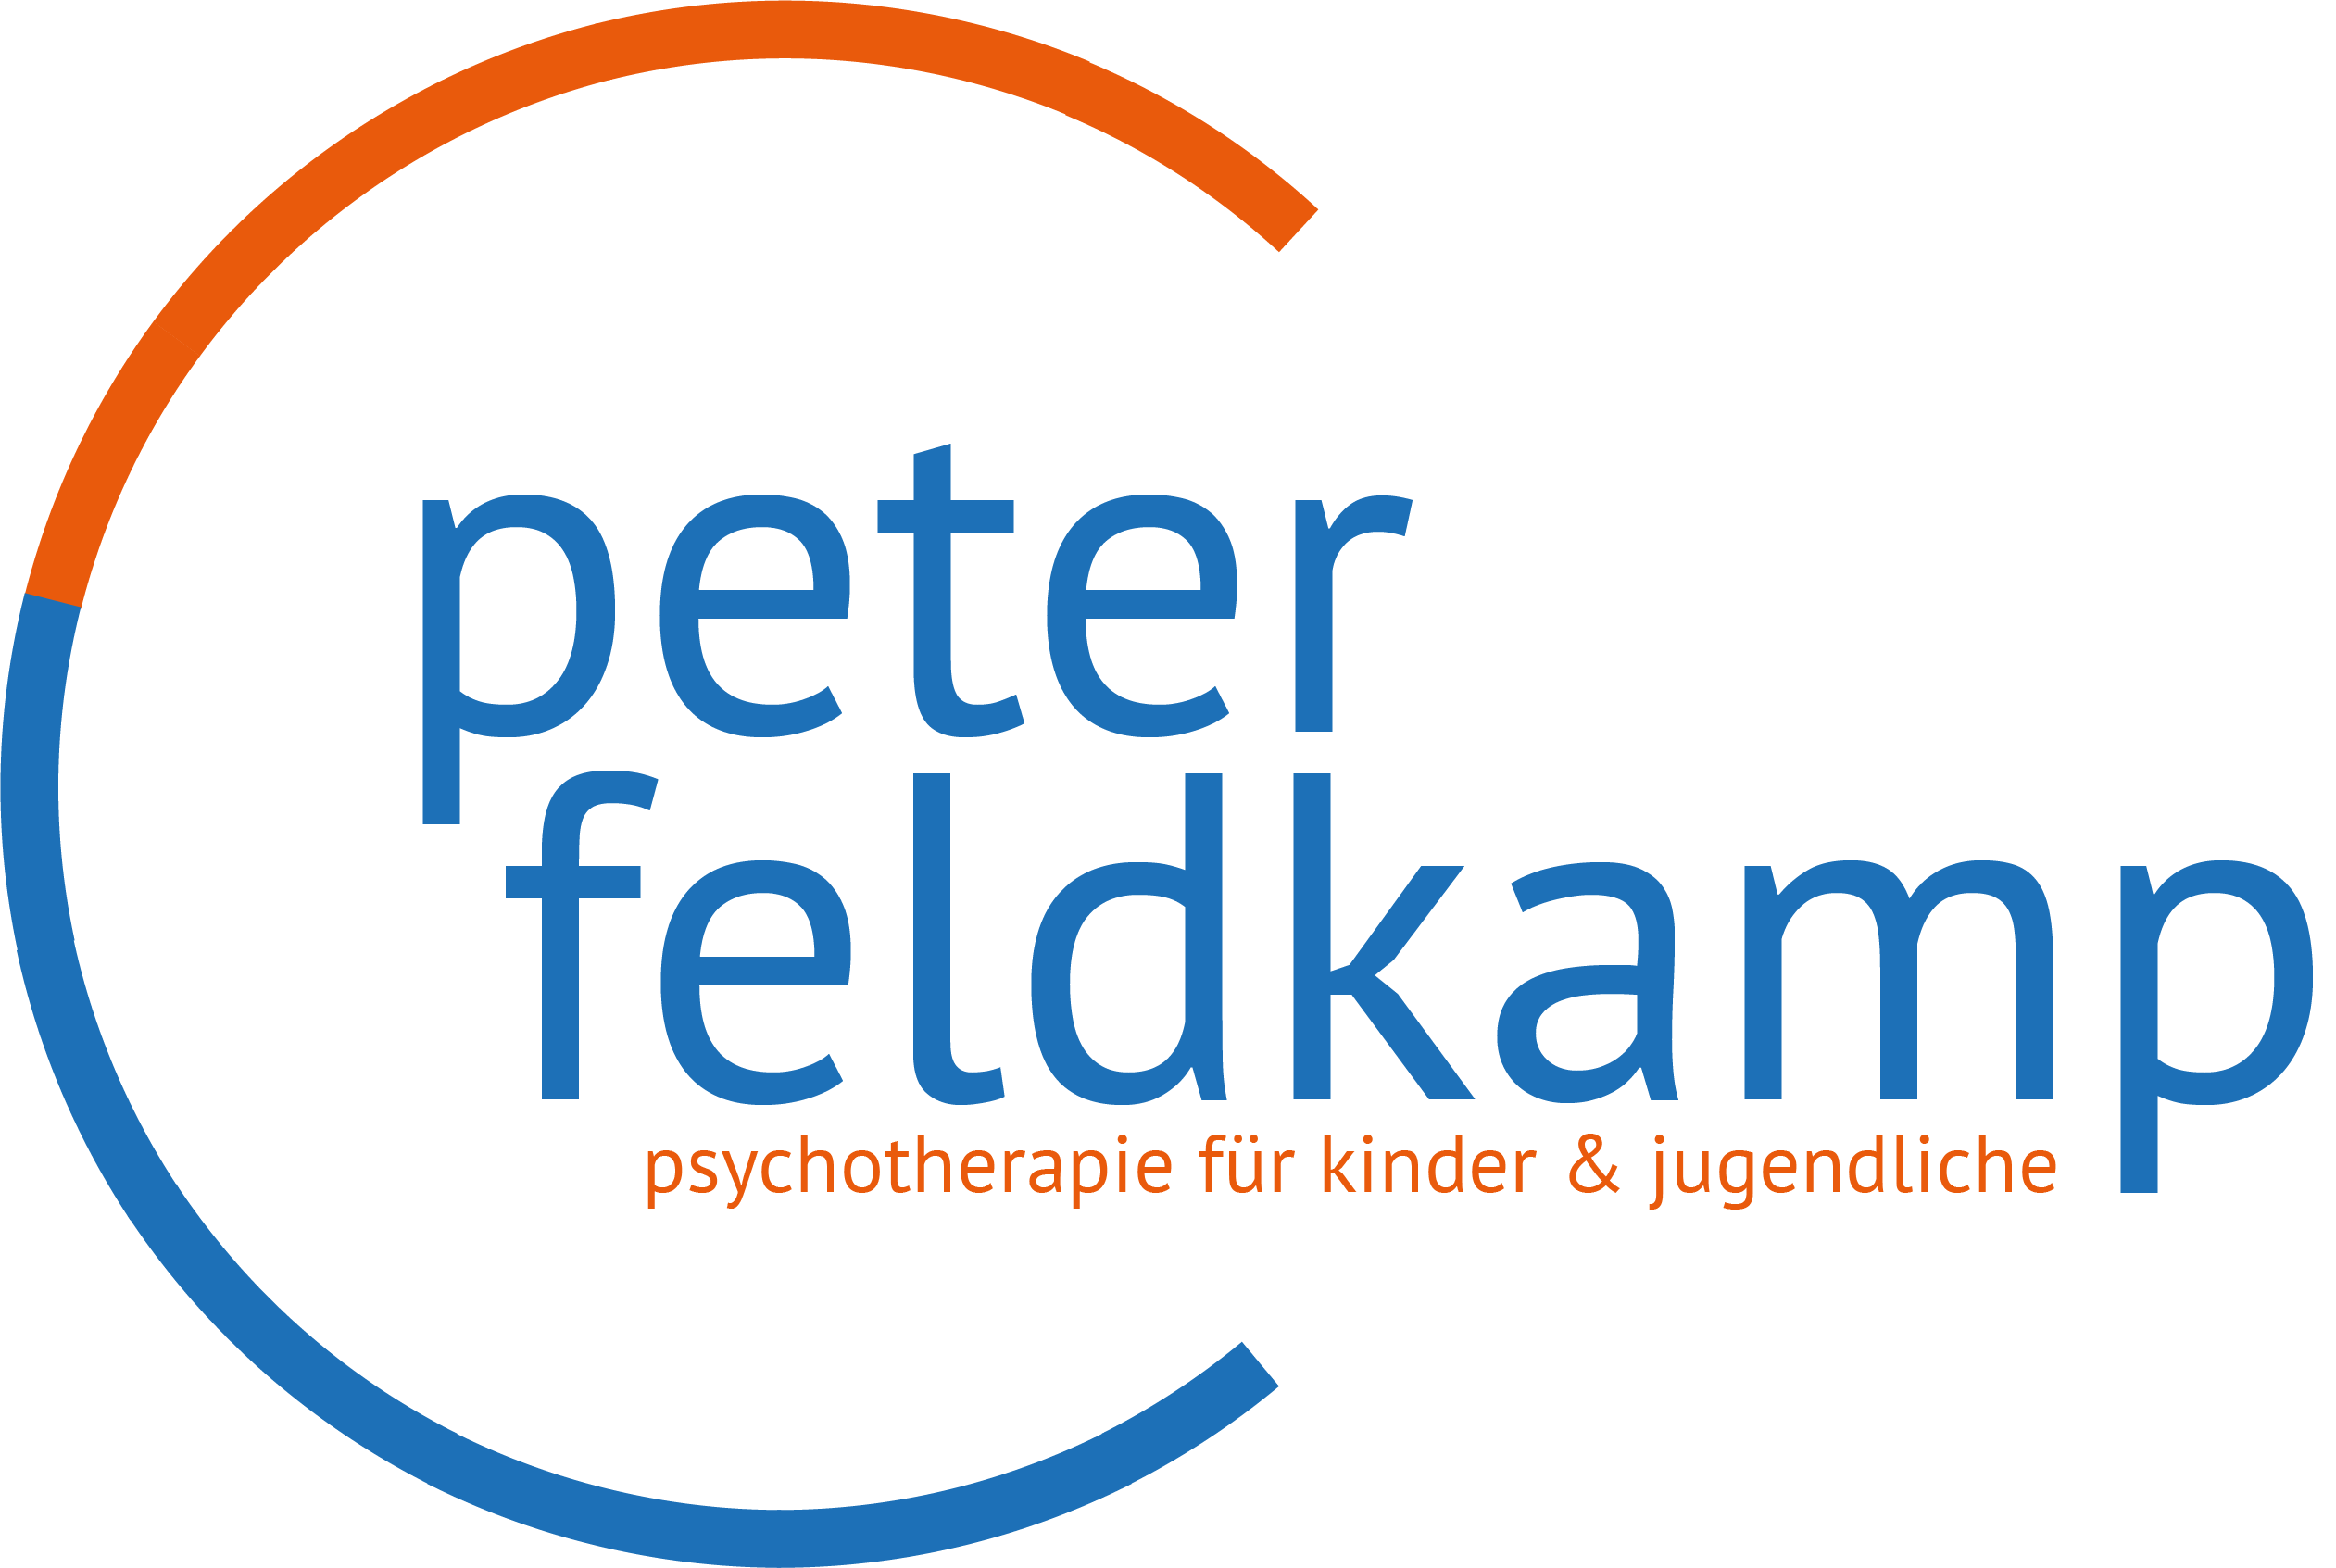 Peter Feldkamp